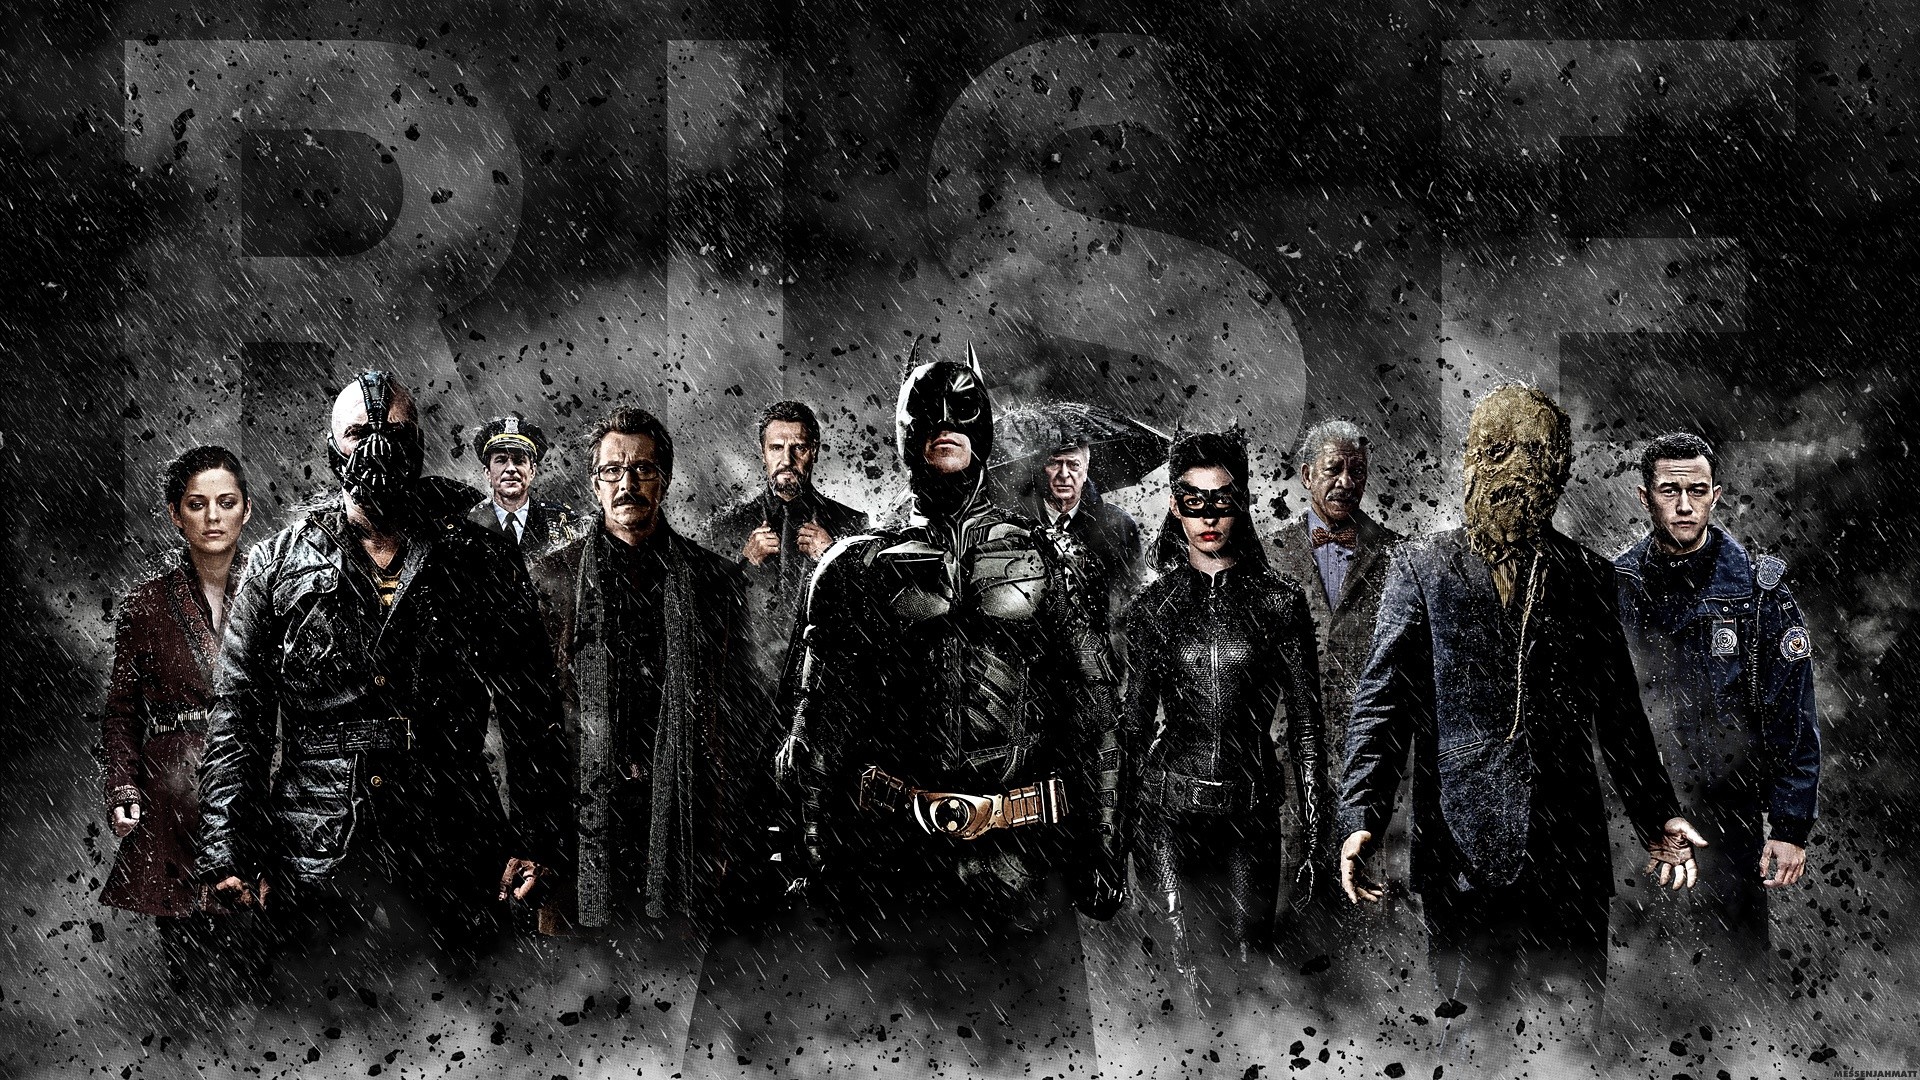 Dark Knight All Characters - HD Wallpaper 